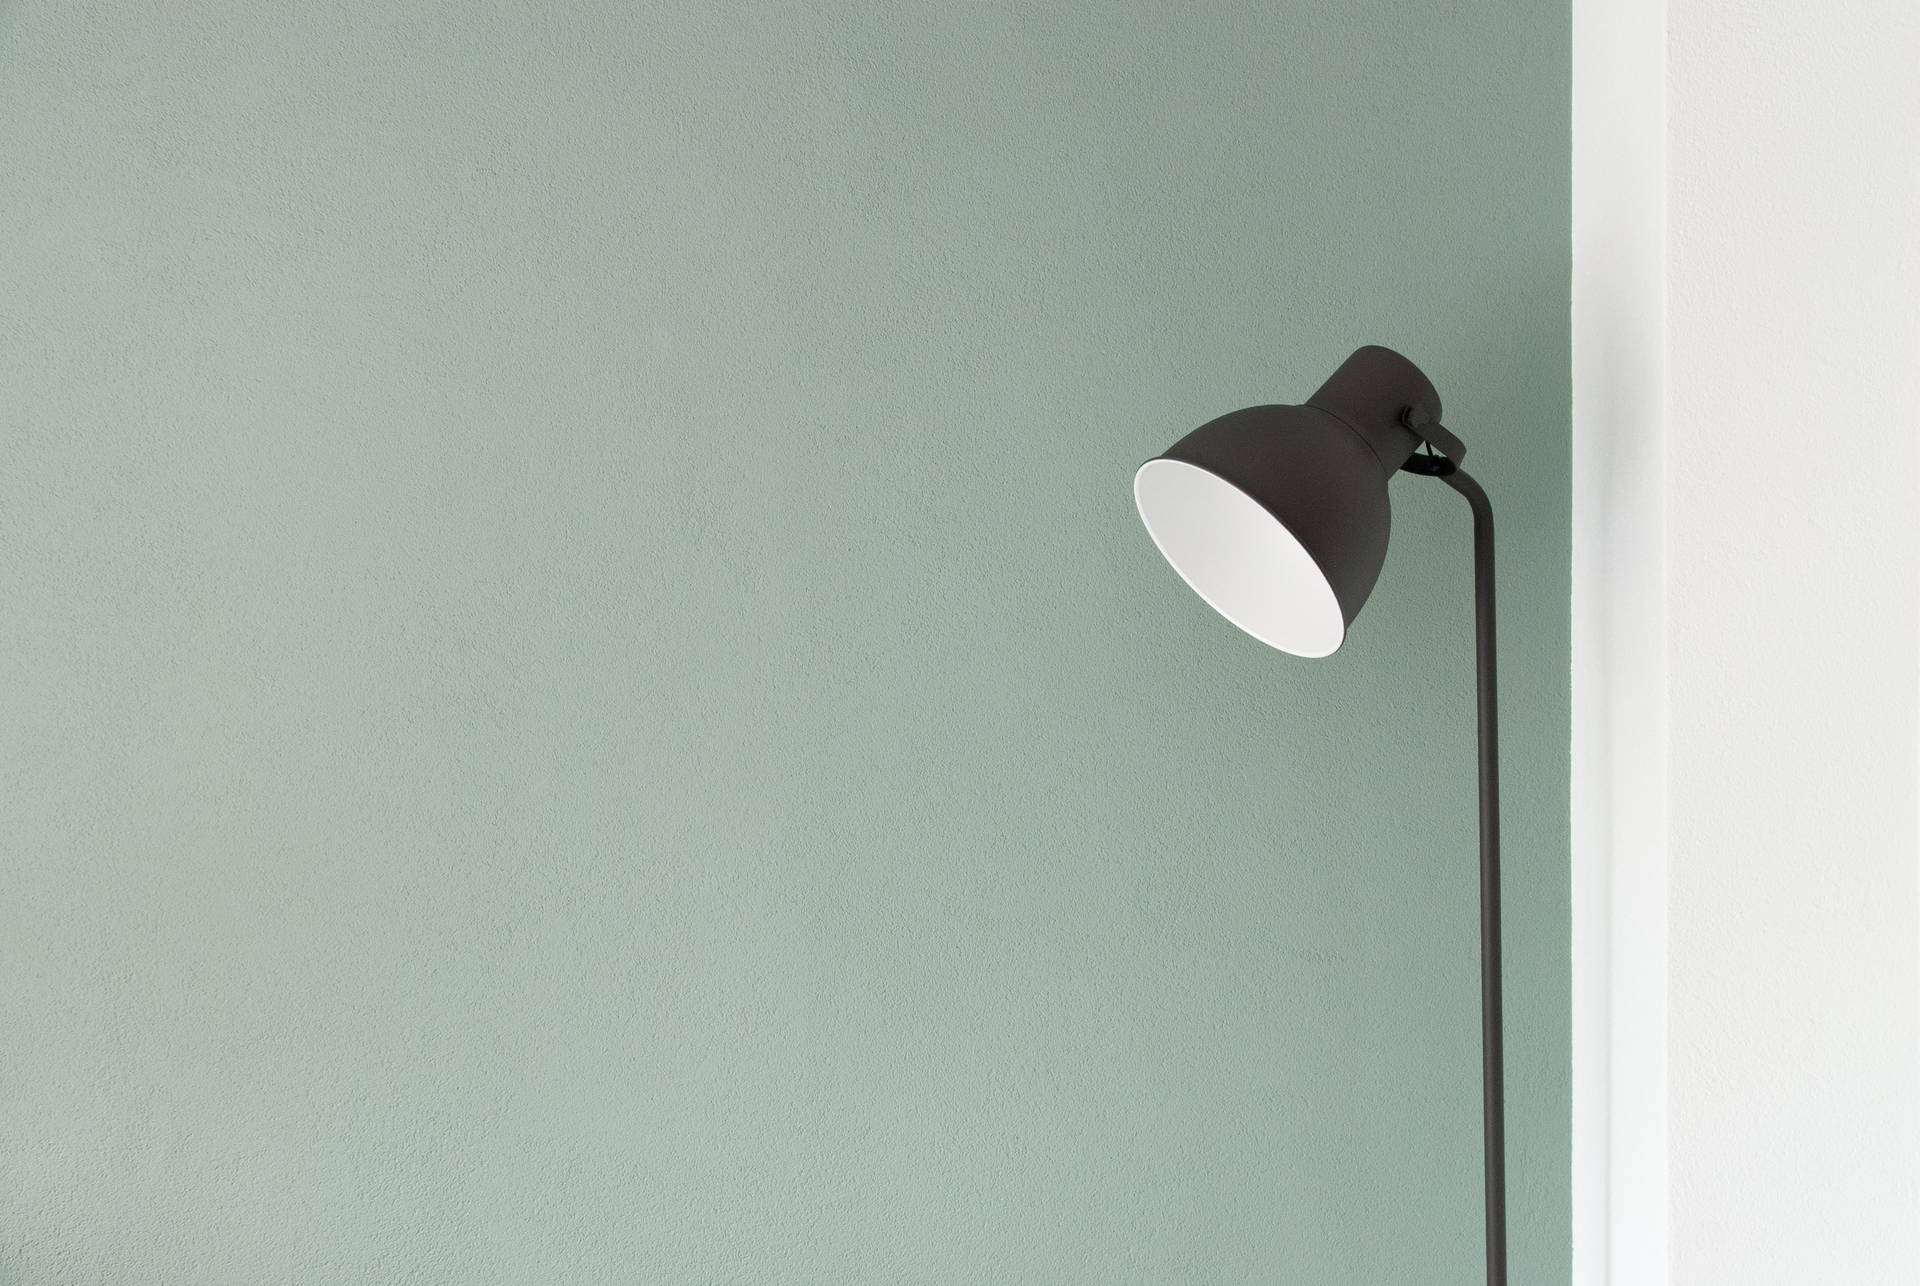 Sage Green Wall And Lamp Wallpaper